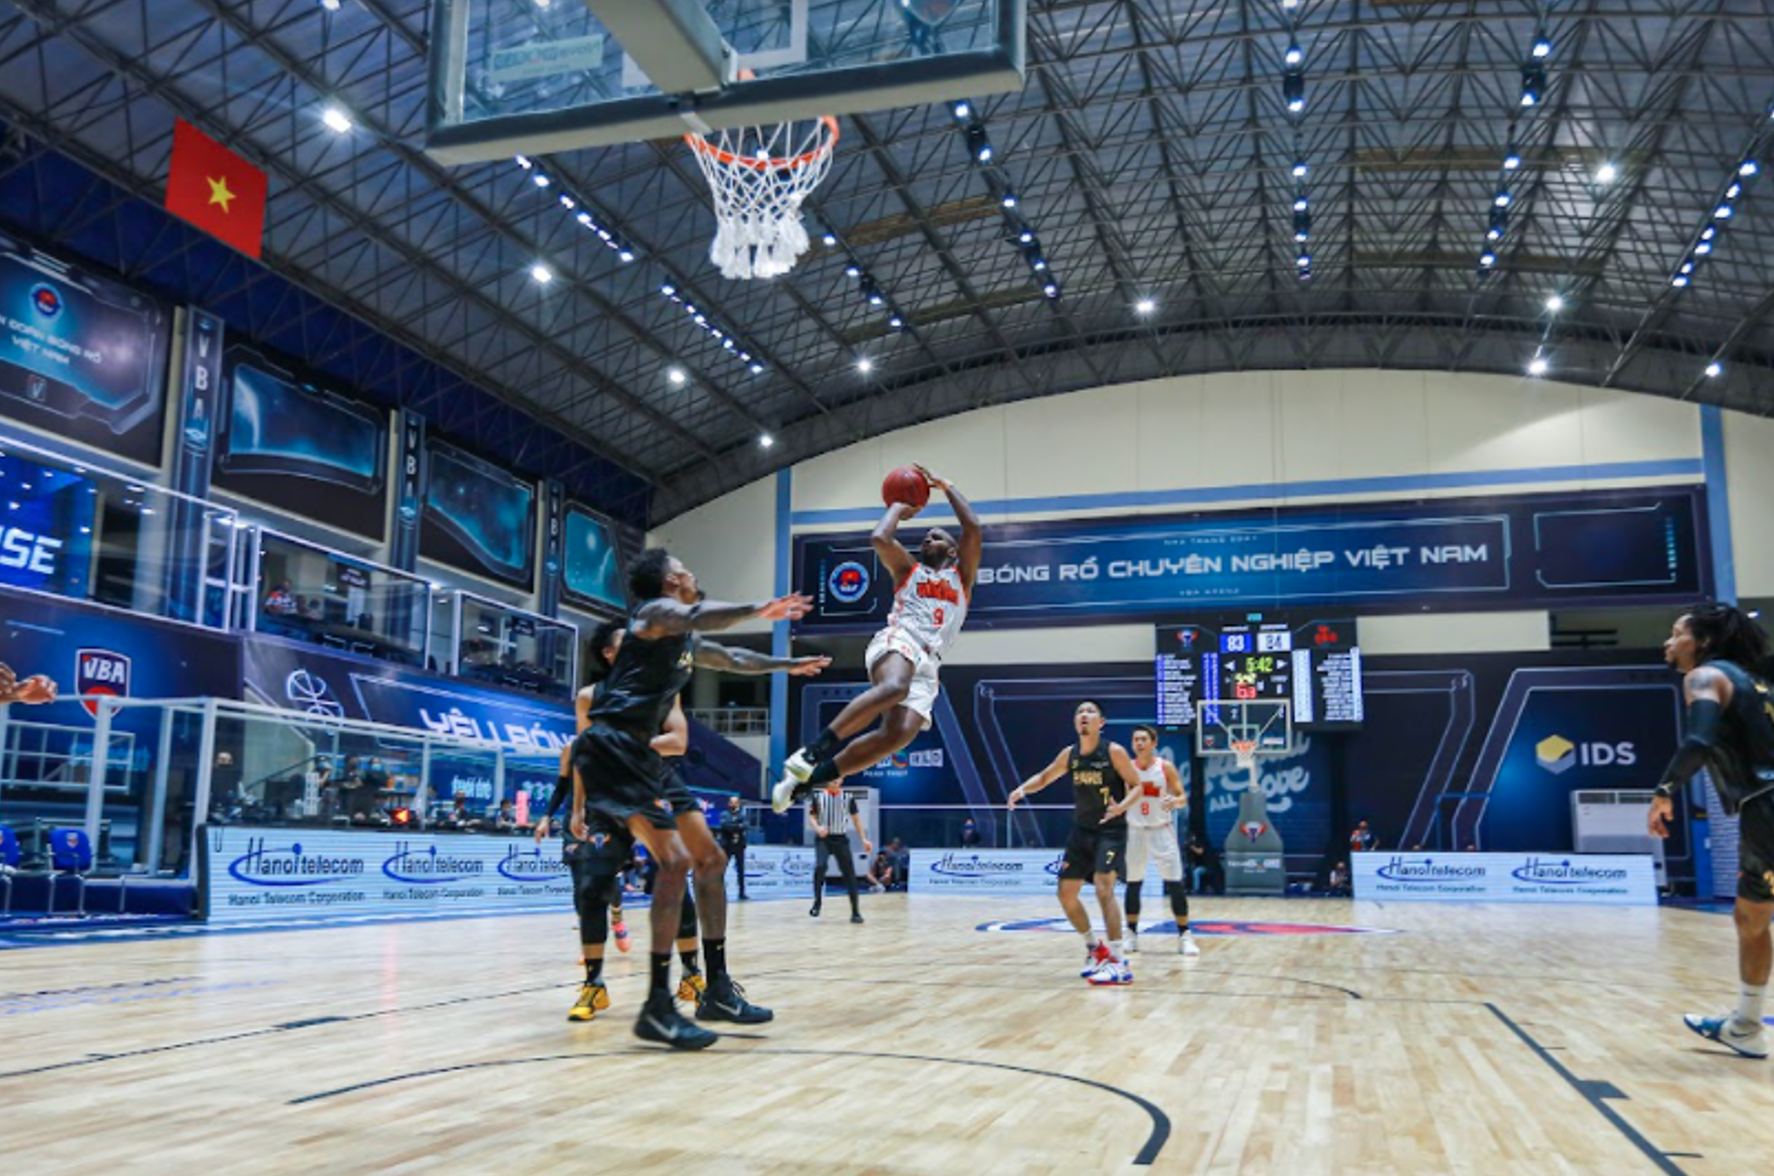 Fans await new basketball tournament in Vietnam’s ‘new normal’